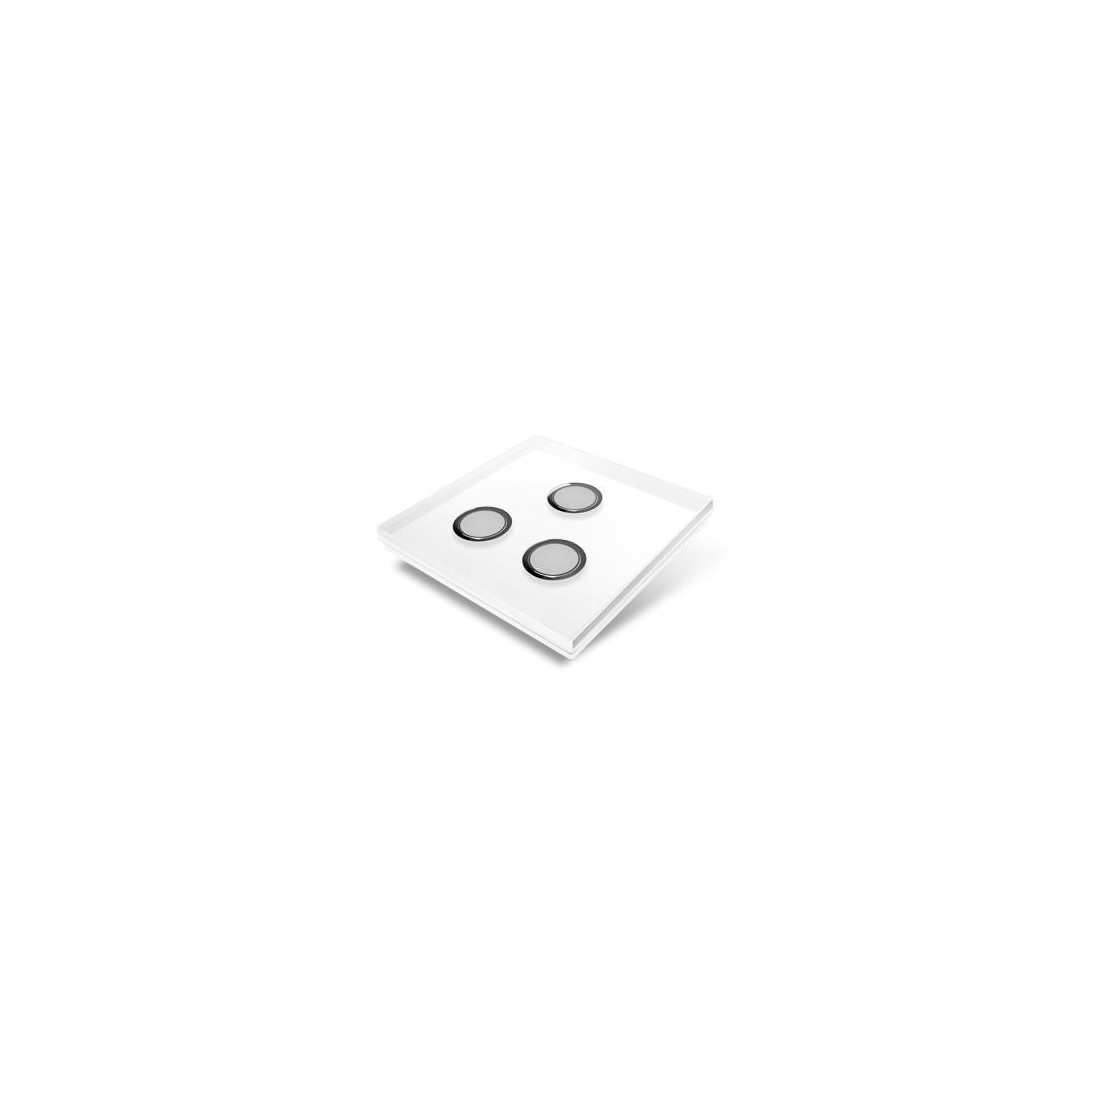 Plaque de recouvrement pour interrupteur Edisio - crystal Blanc